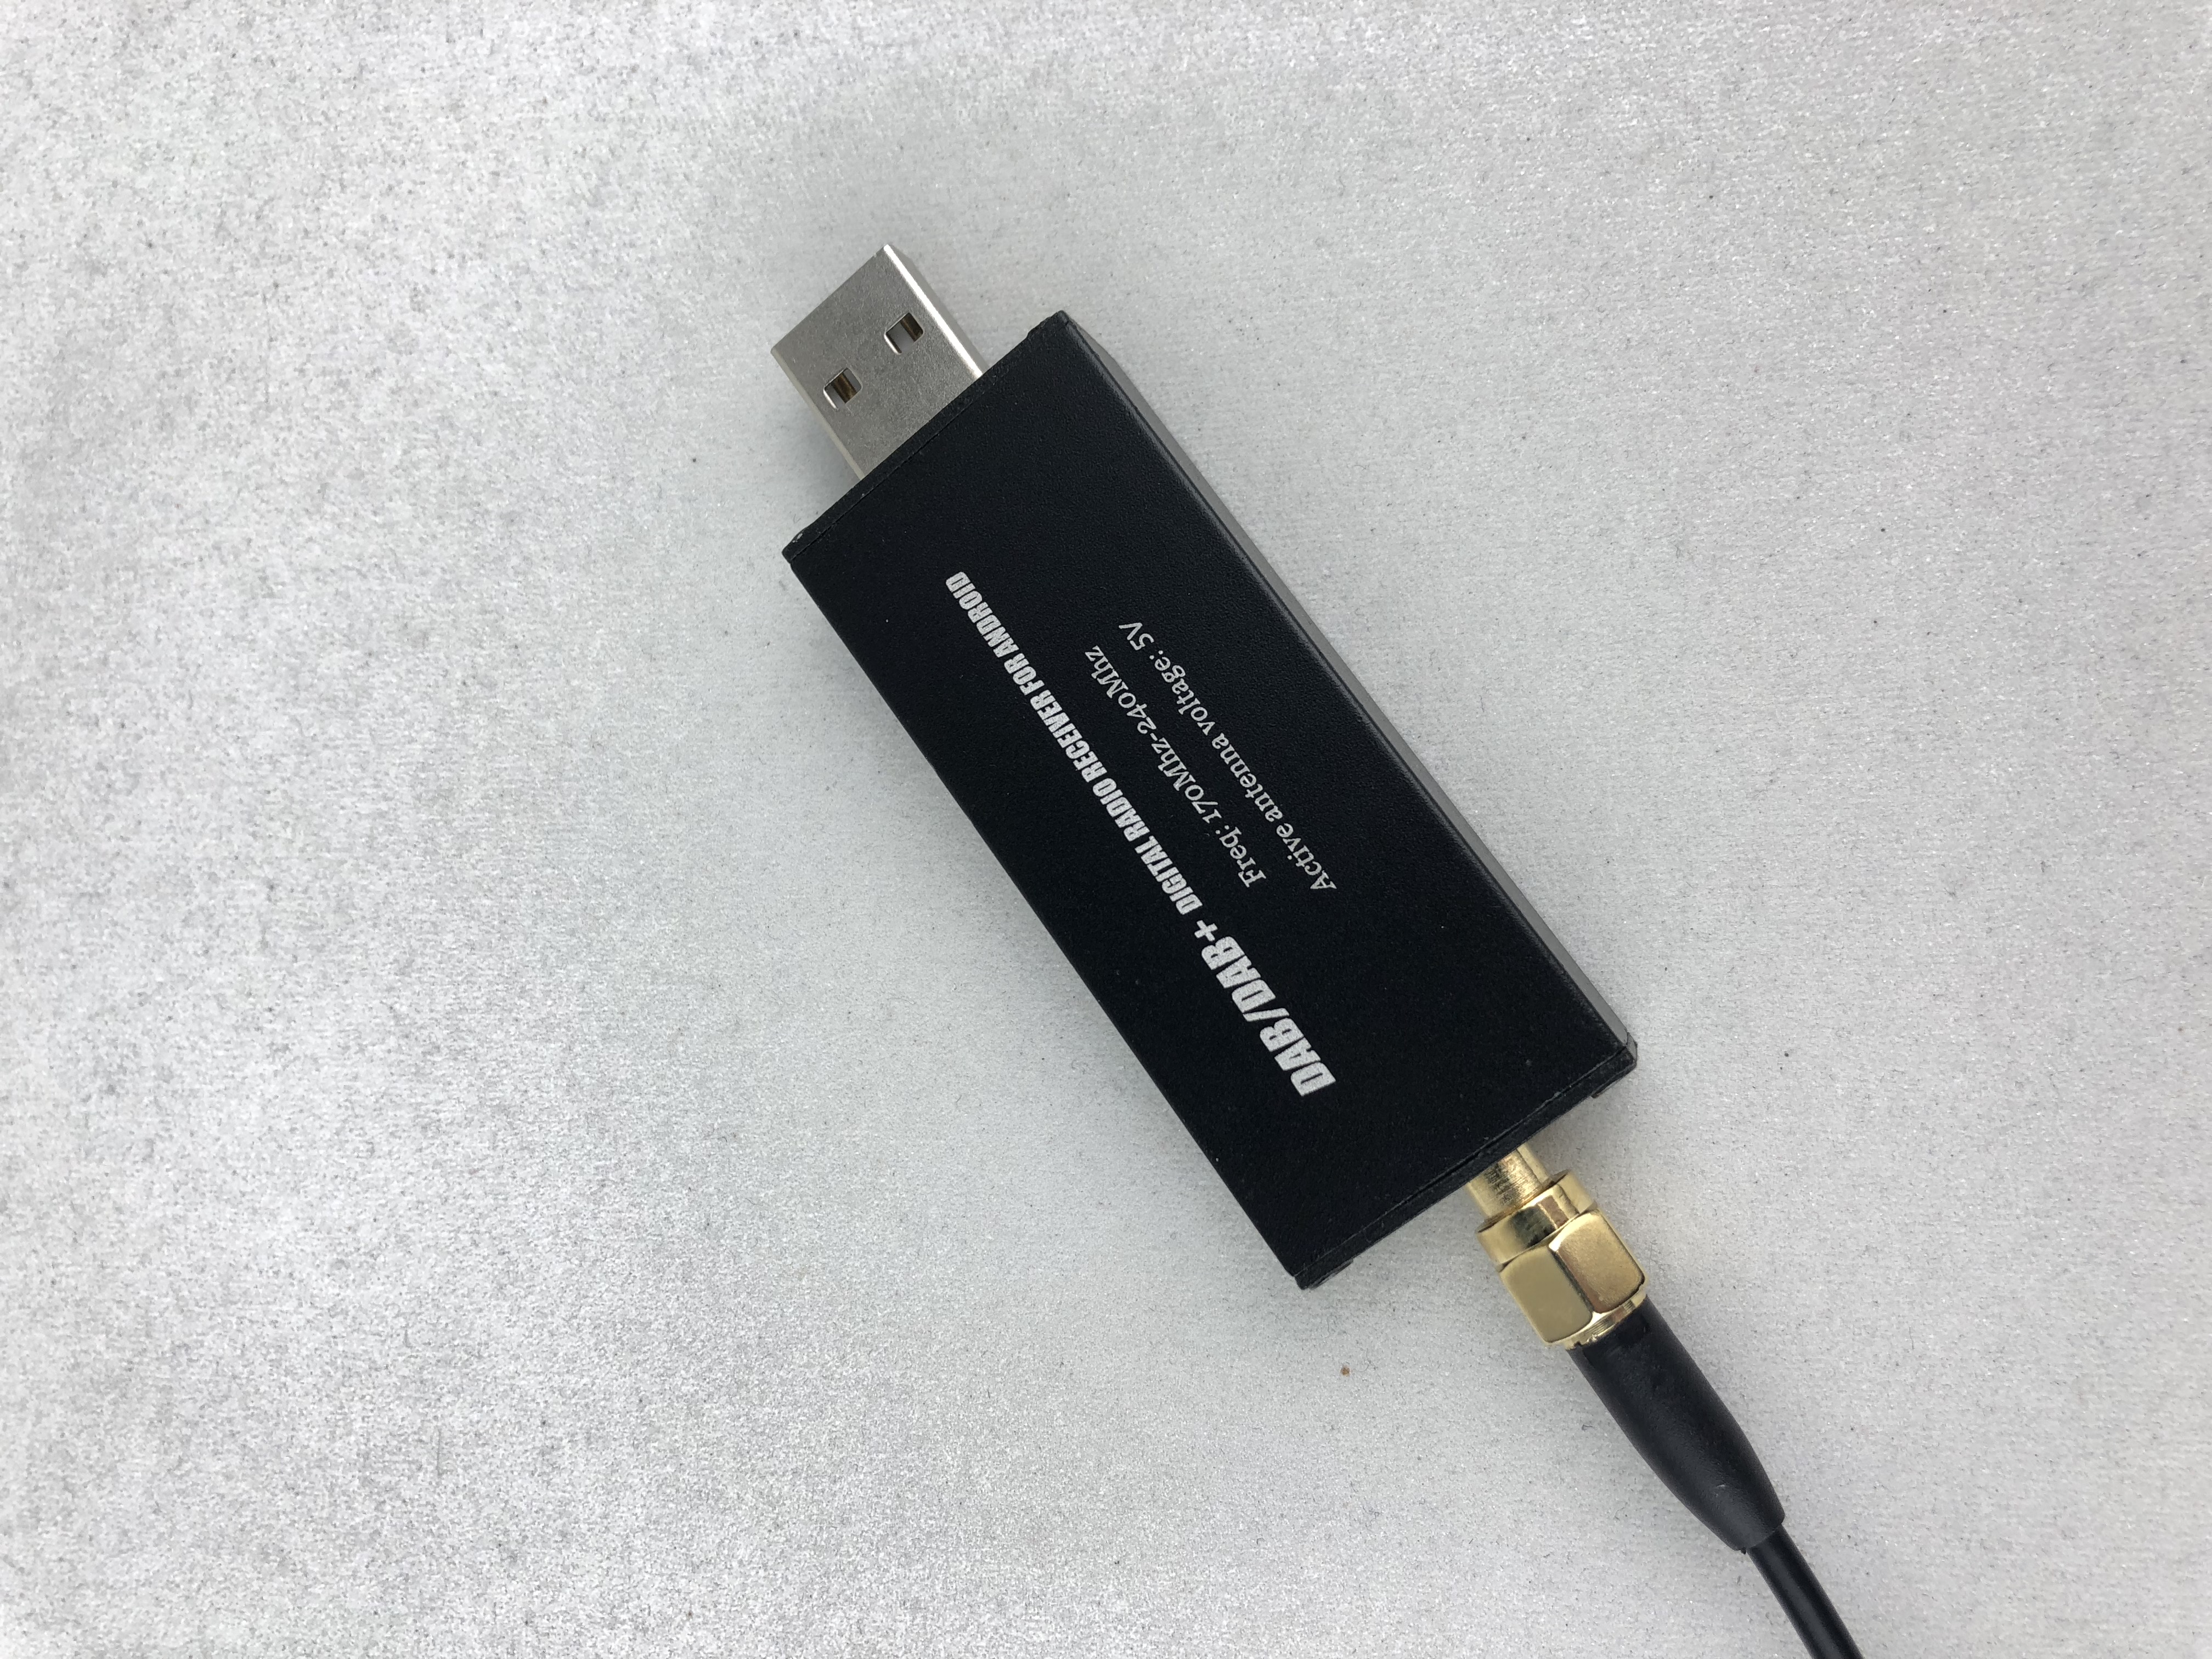 USB车载DAB收音机 USB车载DAB接收器收音机 USB接收器 车载DAB